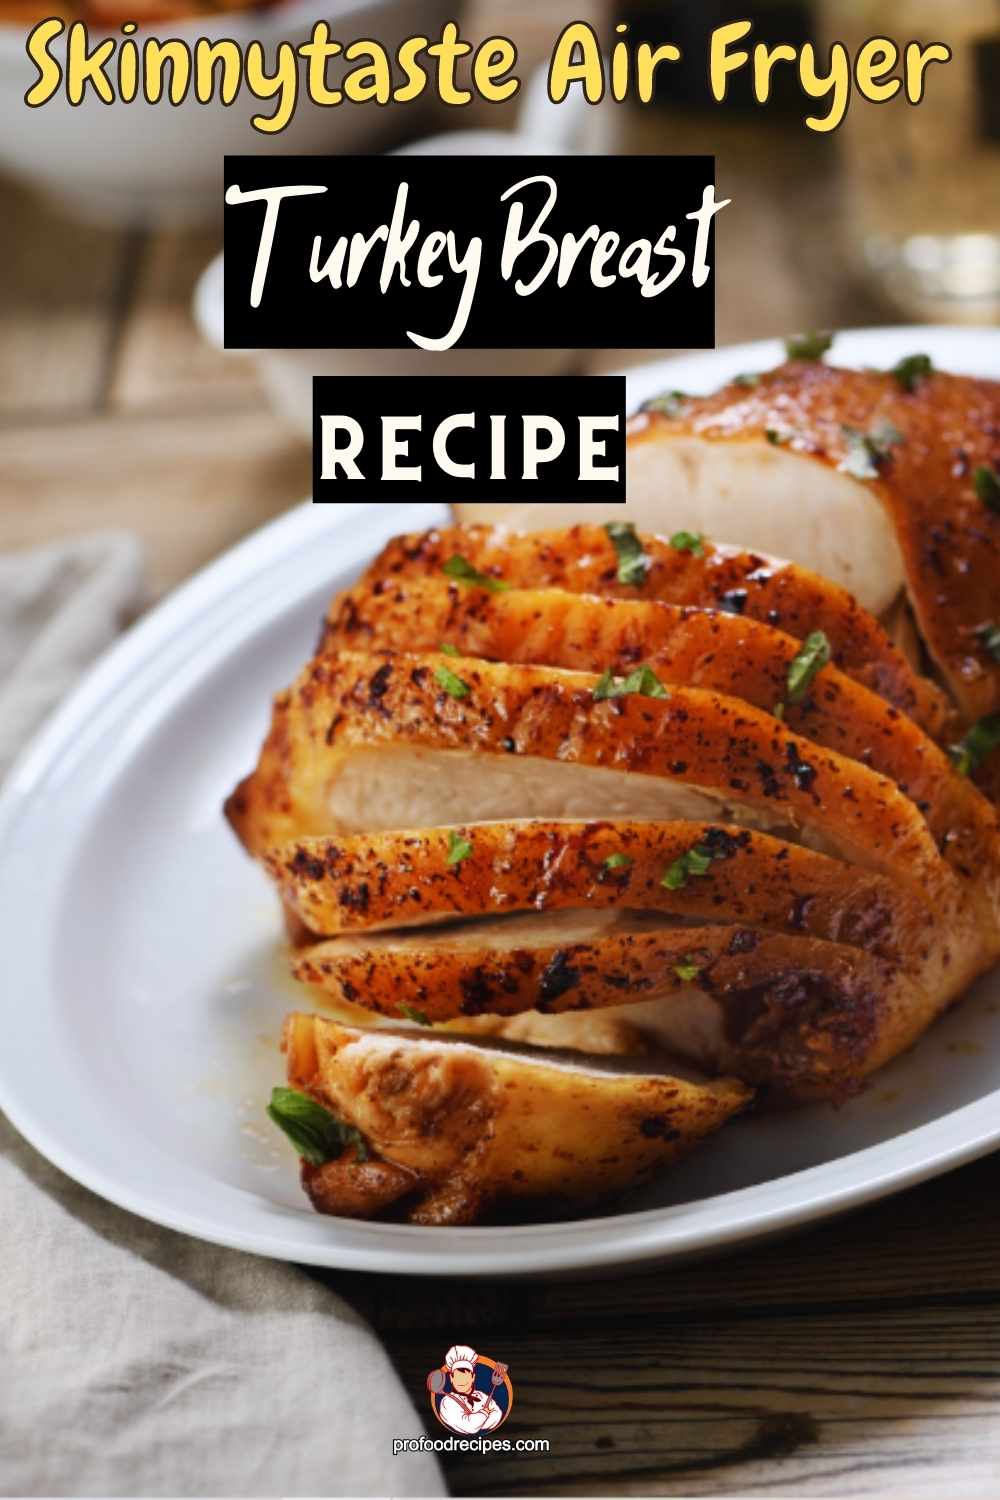 Skinnytaste Air Fryer Turkey Breast Recipe